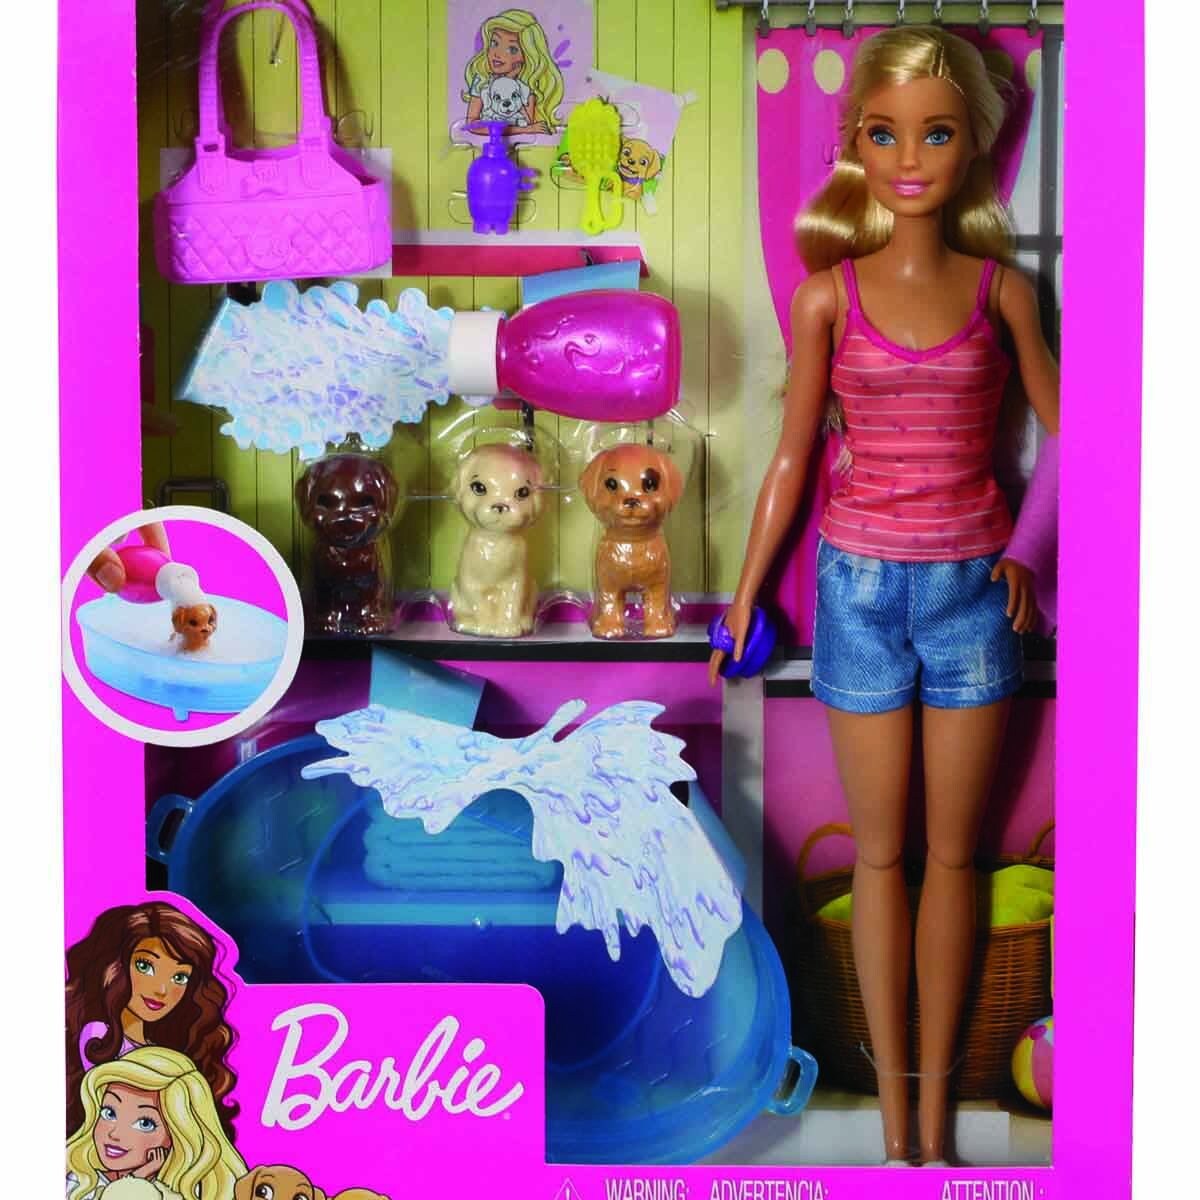 Набор игровой Barbie Купание щенков GDJ37